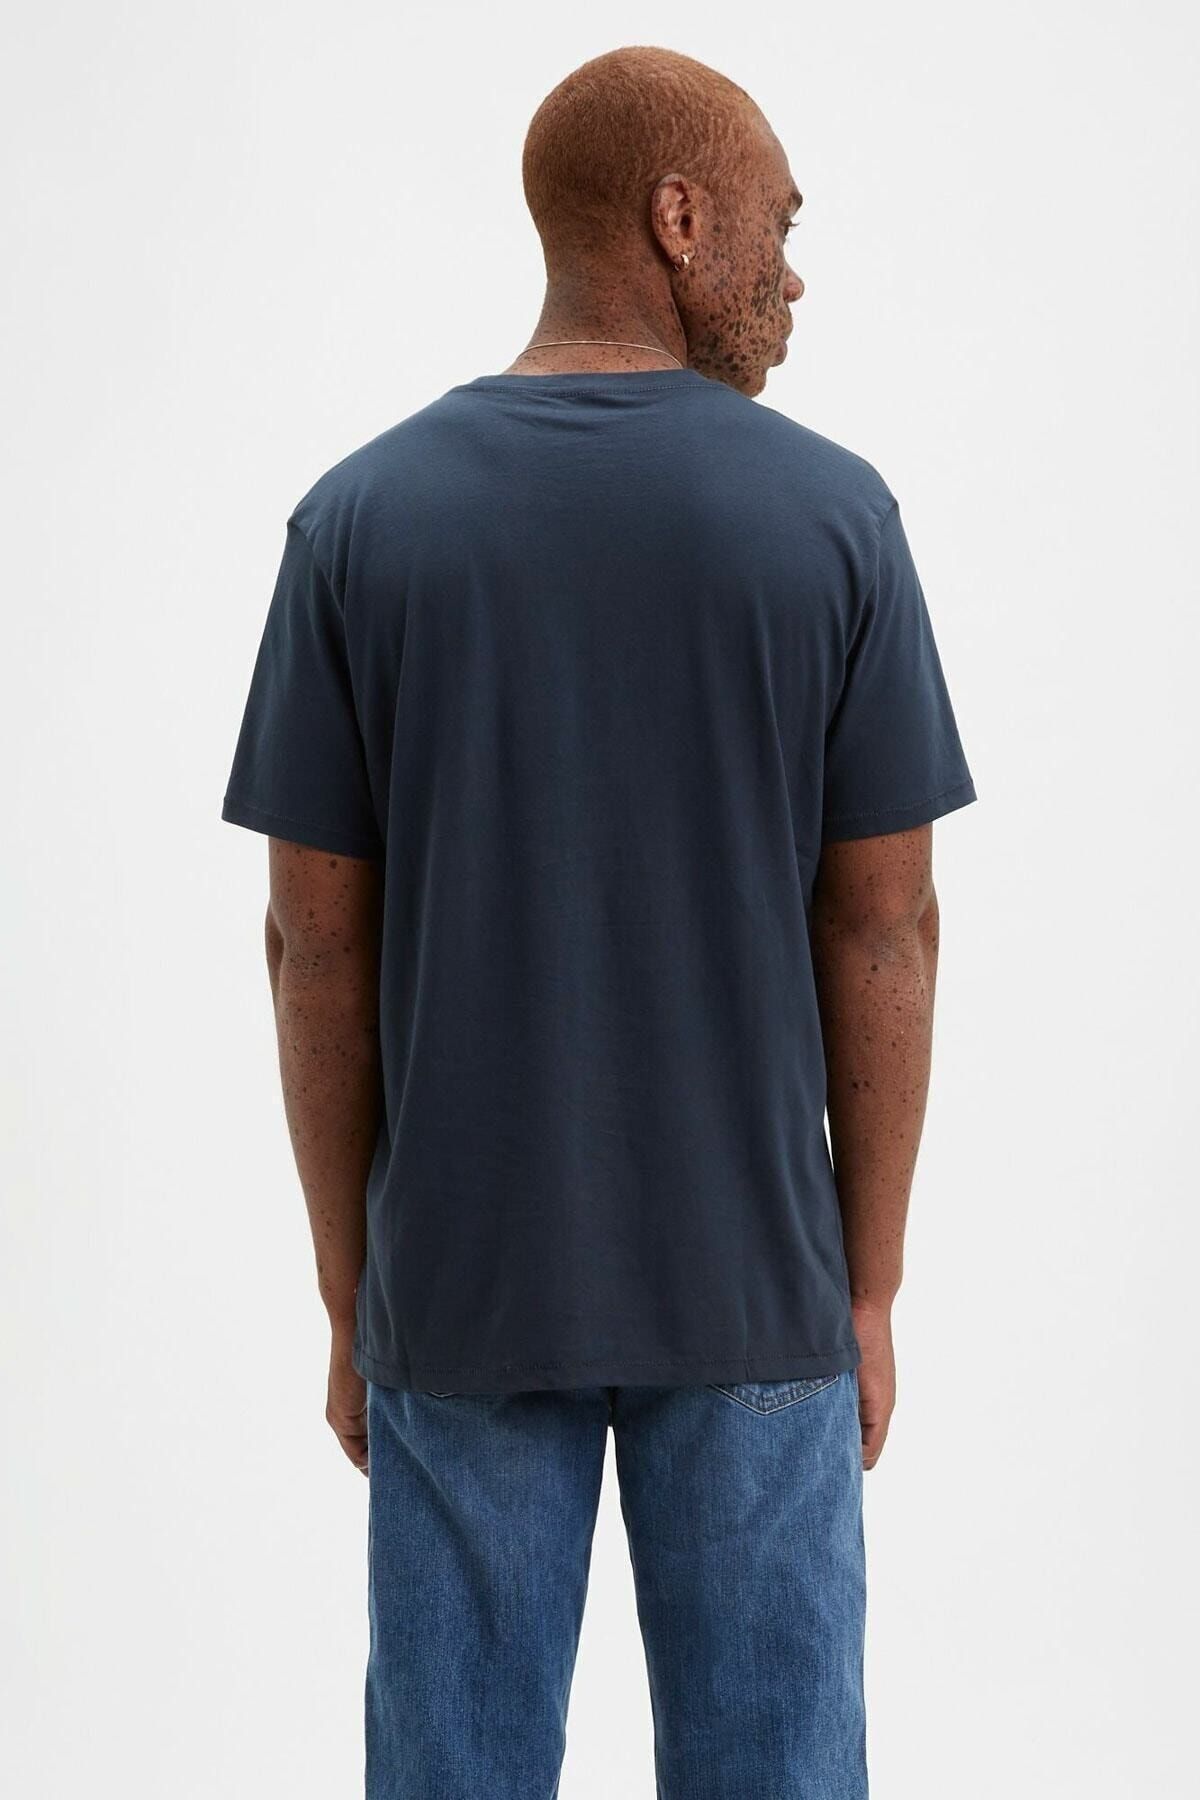 Levi's تی شرت مردانه 17783-0313